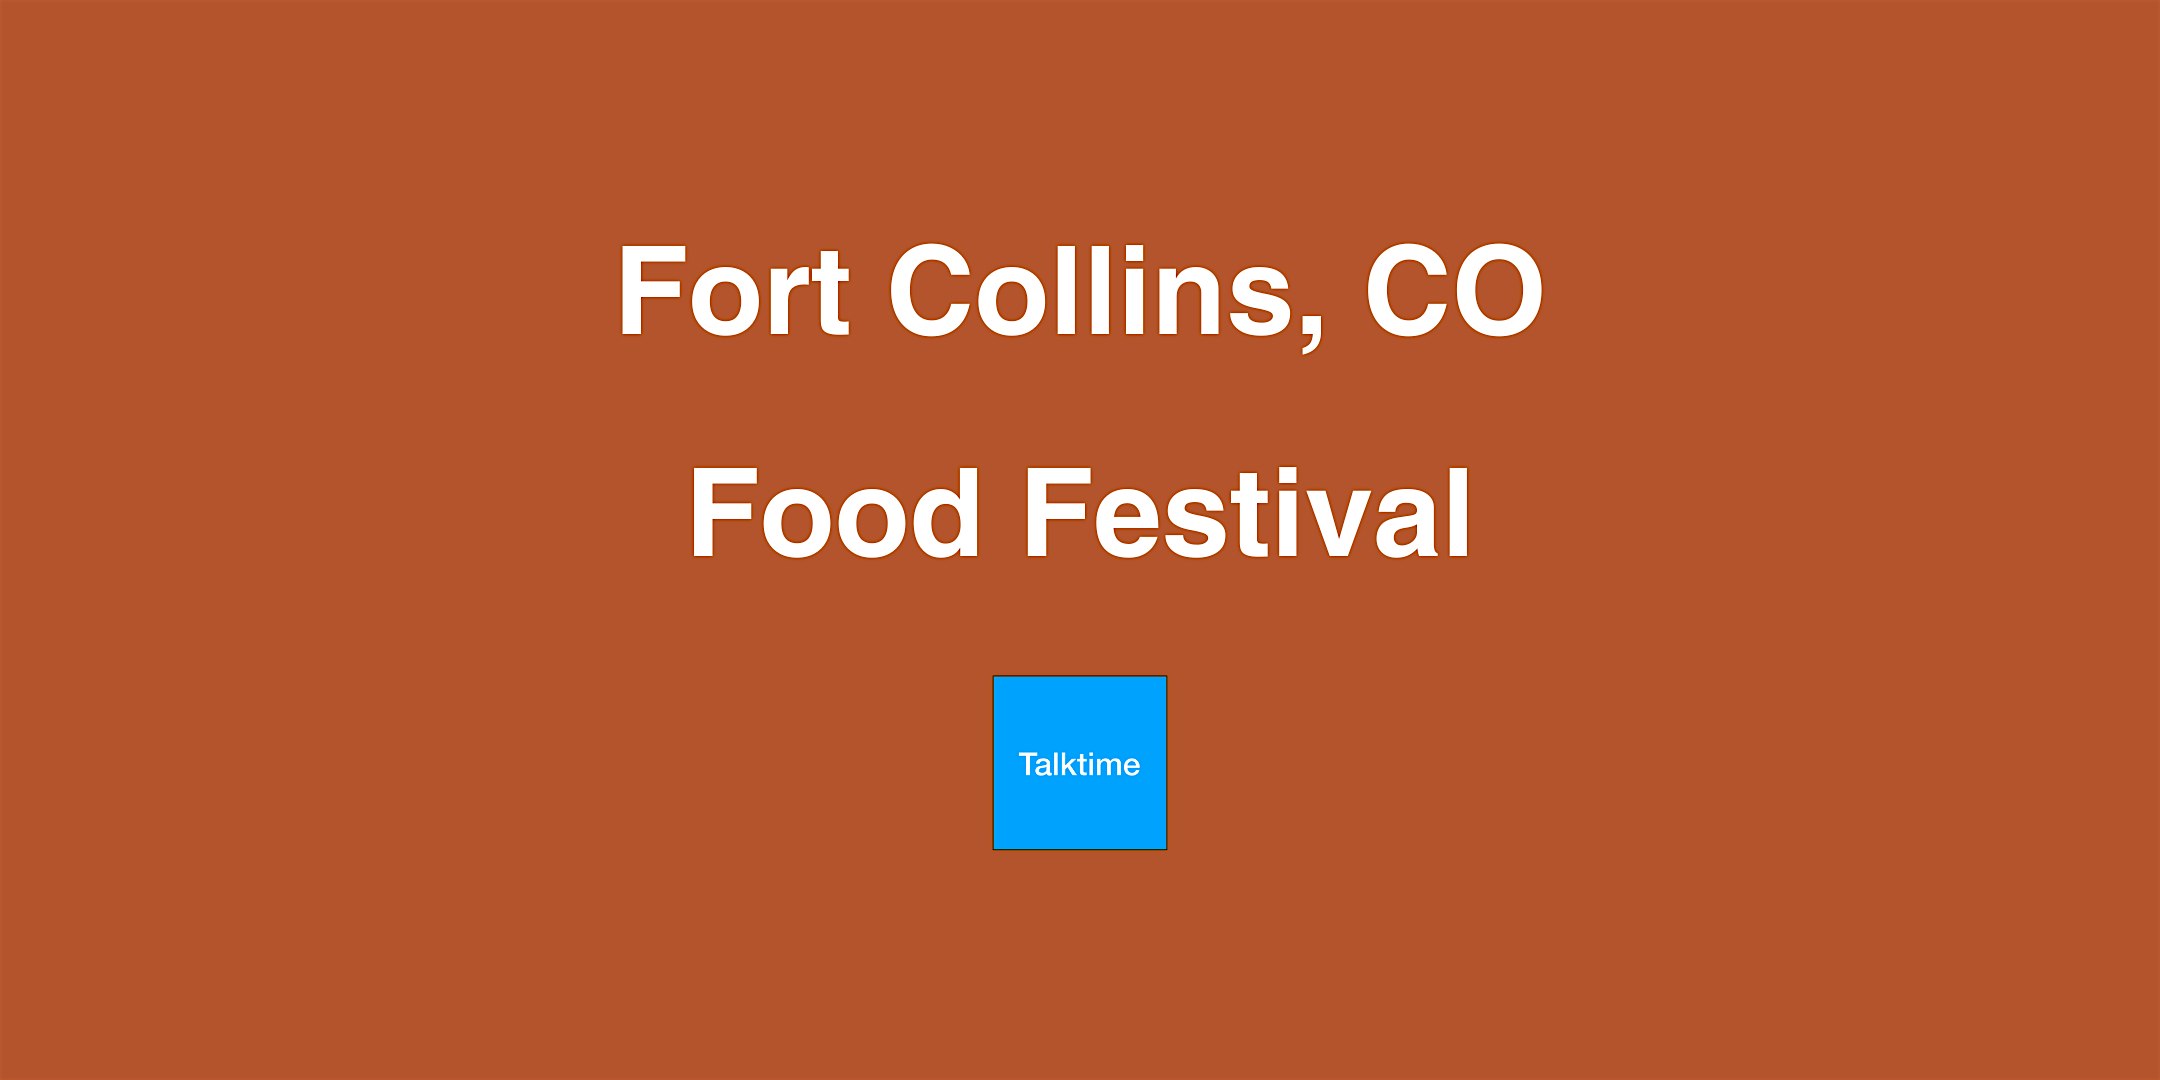 Food Festival - Fort Collins